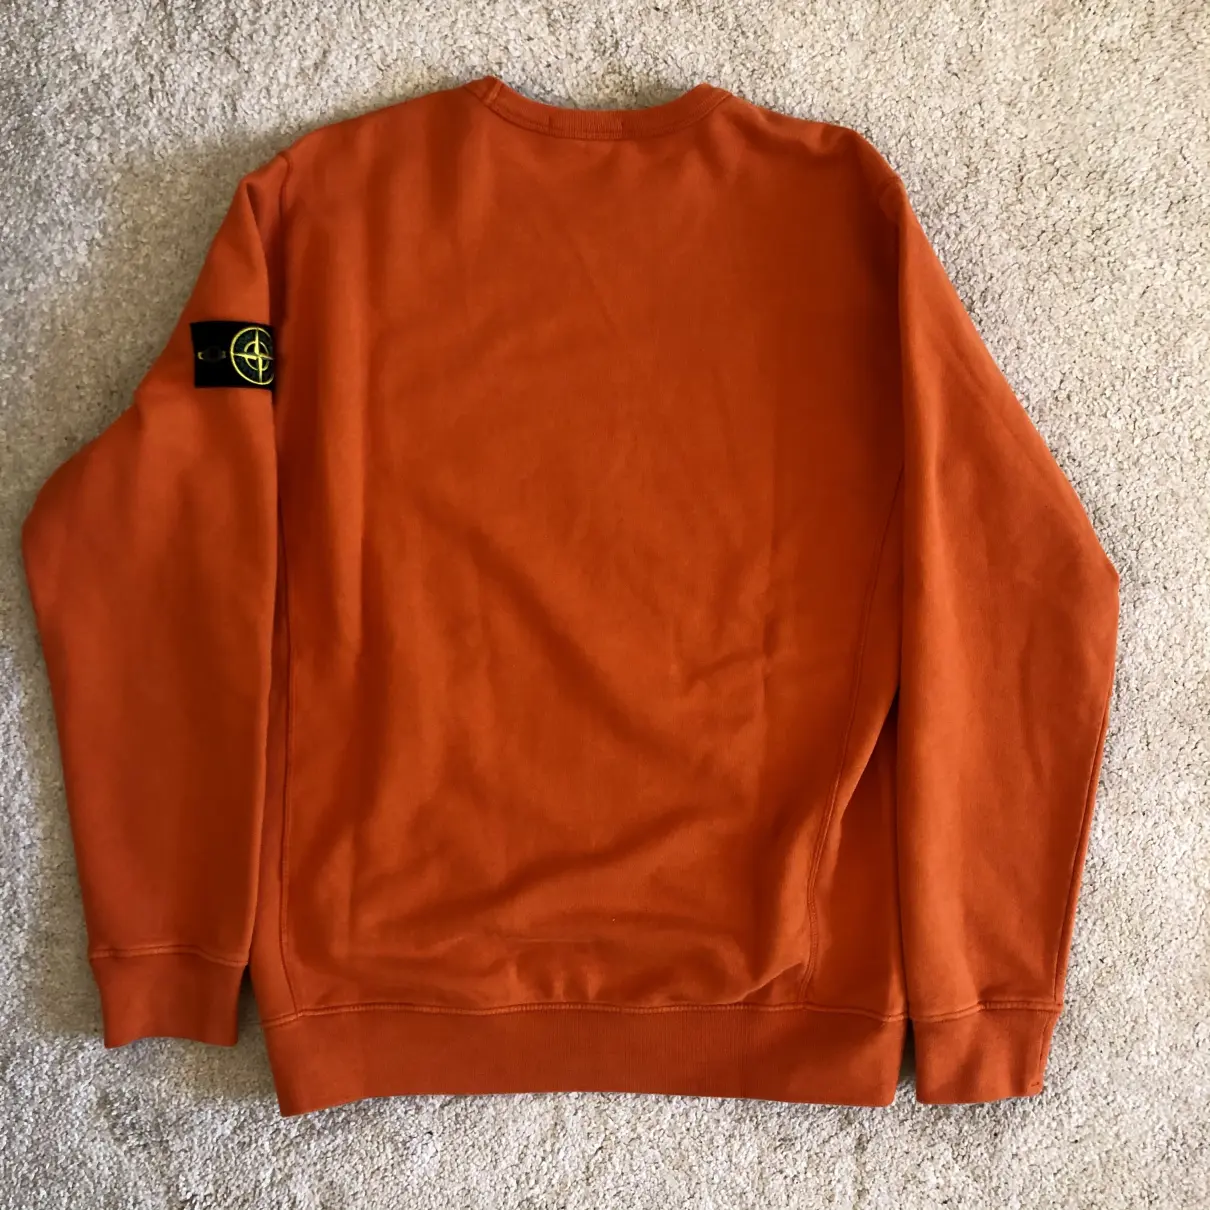 Buy Stone Island Orange Cotton Knitwear & Sweatshirt online